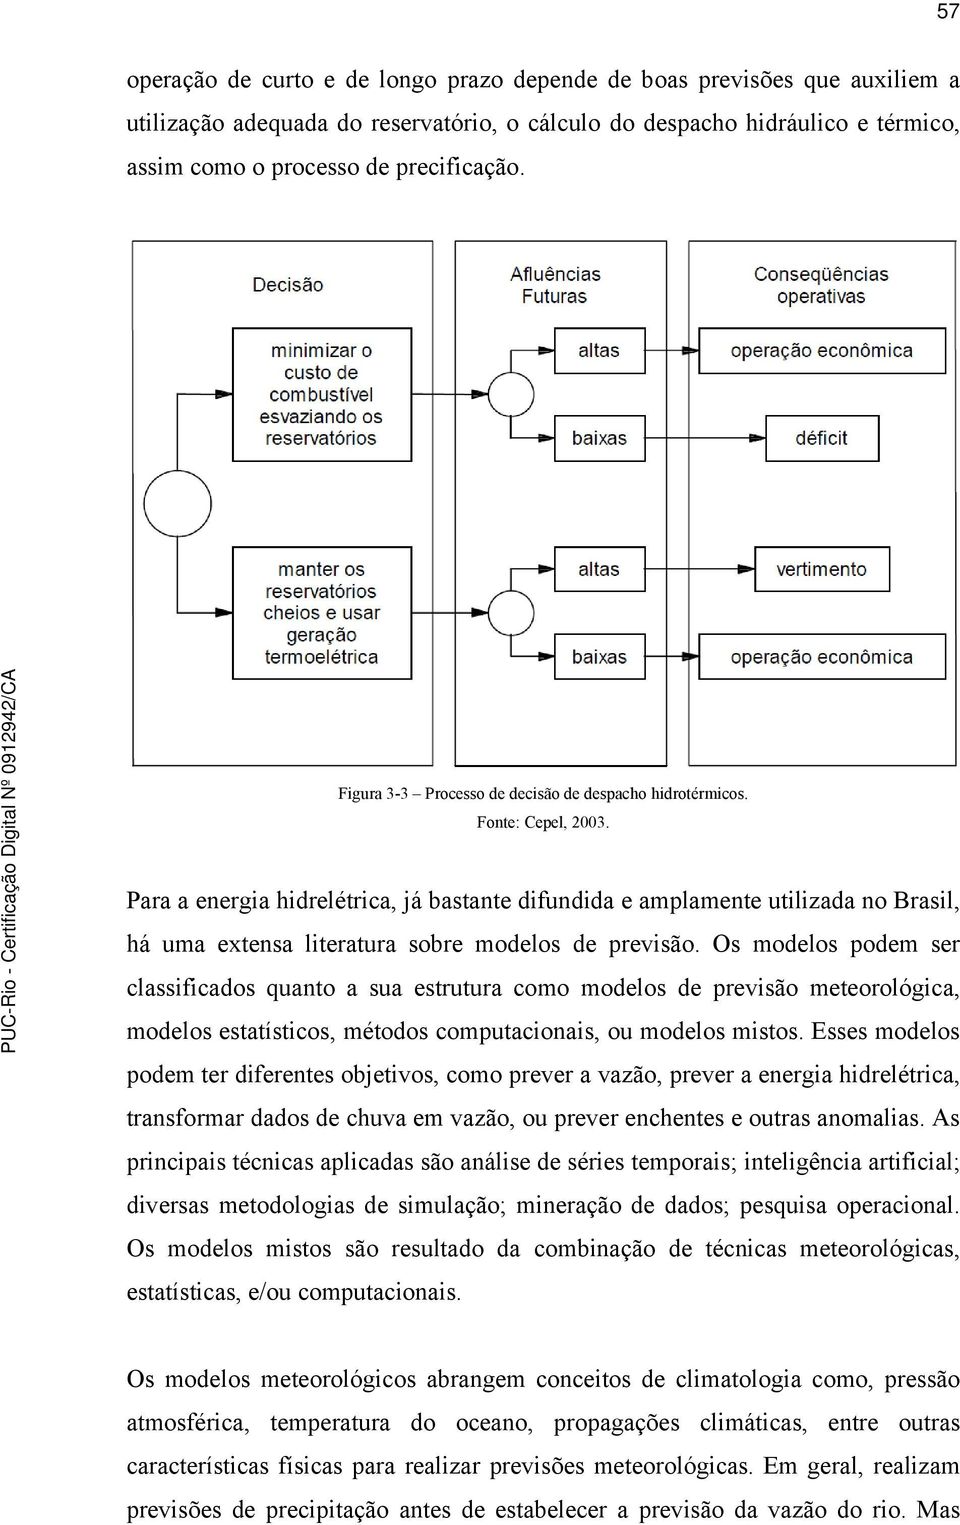 Para a energia hidrelétrica, já bastante difundida e amplamente utilizada no Brasil, há uma extensa literatura sobre modelos de previsão.